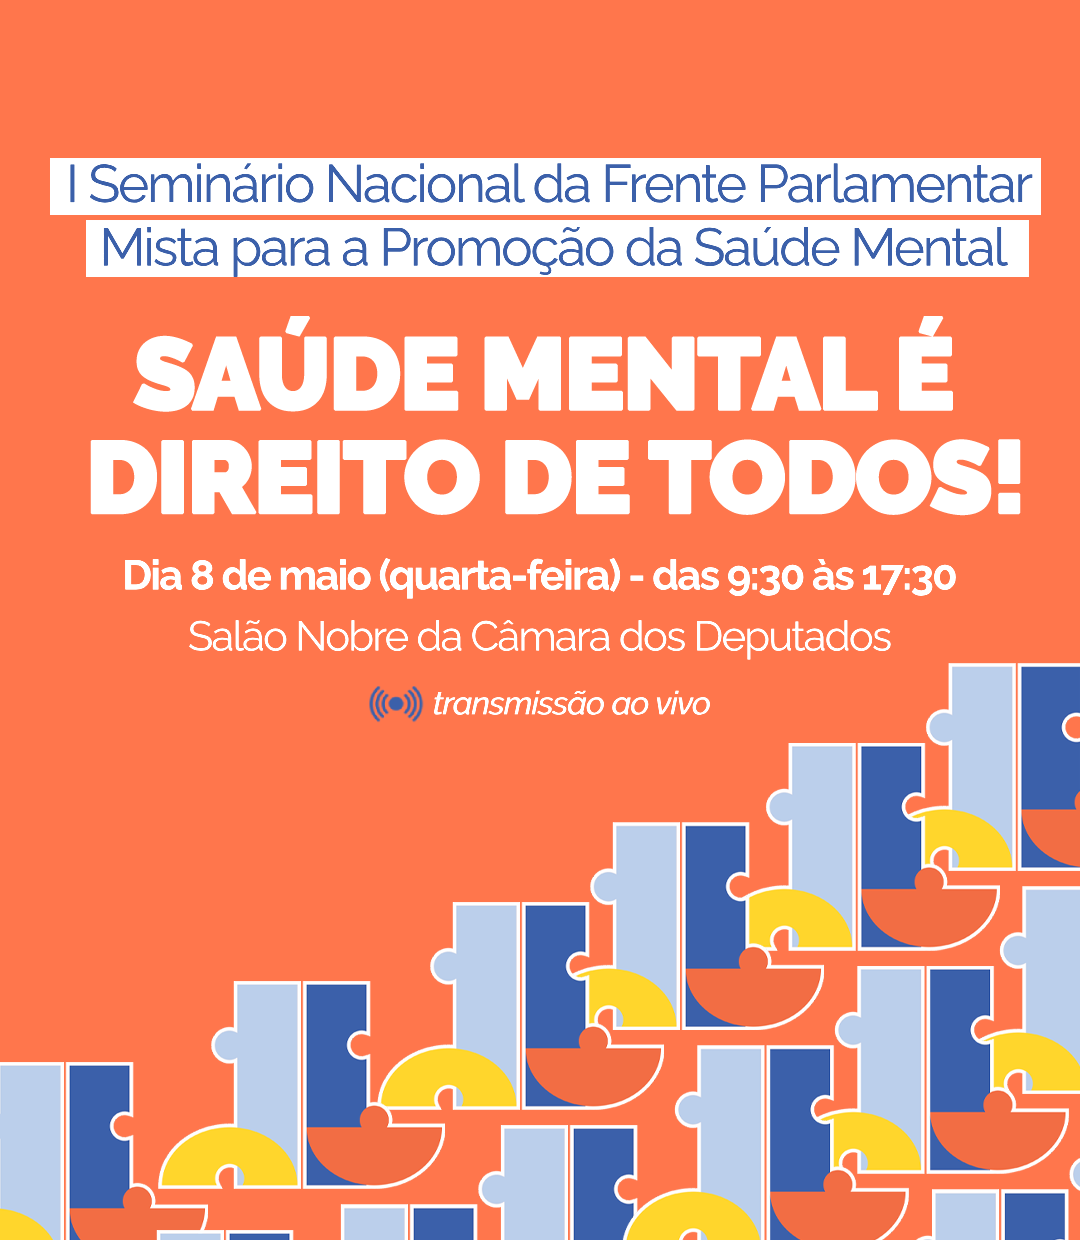 I Seminário Nacional da Frente Parlamentar Mista para a Promoção da Saúde Mental